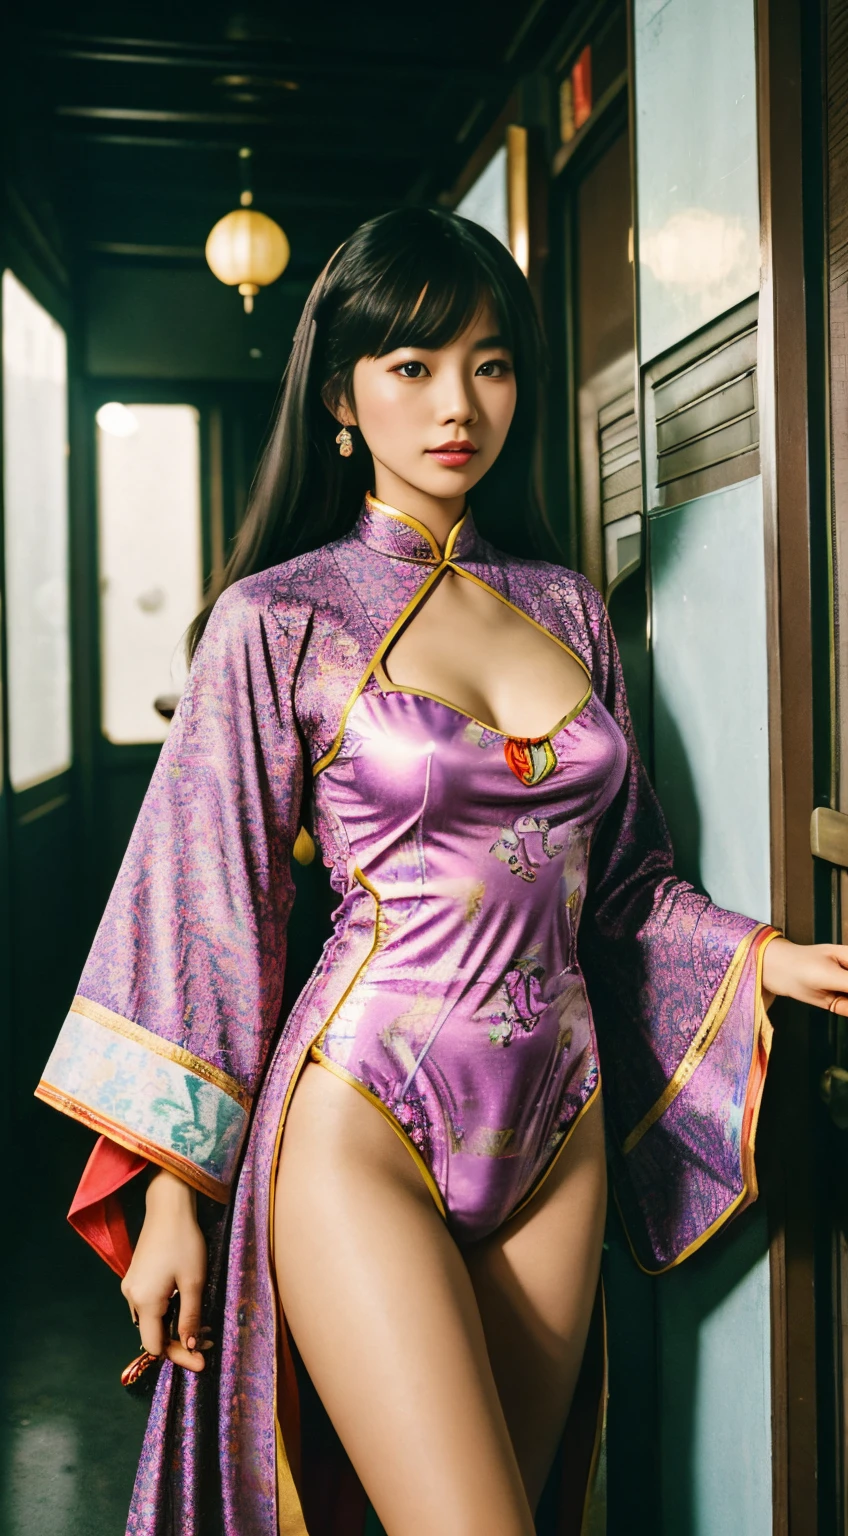 現代のタイムトンネルの中で，中国人女性の心を呼び起こす，レトロへの扉を開けてください。1970年代に発見された宝物，色とりどりの思い出が服を通して流れる，独特の模様が時のメロディーを紡ぐ。ヴィンテージのローブを着る，中国女性はサイケデリックな 1970 年代に突入，胸を見てください 1：3，虹の光がこの街に輝く。彼女の存在は時の歌となる，周りの人々をレトロなビートに従うように導きましょう。ソーシャル メディアで彼女の過去の旅を目撃してください，チャームサージョアとより多くの魂が時空を旅するこのメロディーに魅了されます，それ&#39;ヴィンテージノートの中から失われた魂の欠片を見つけるような.。